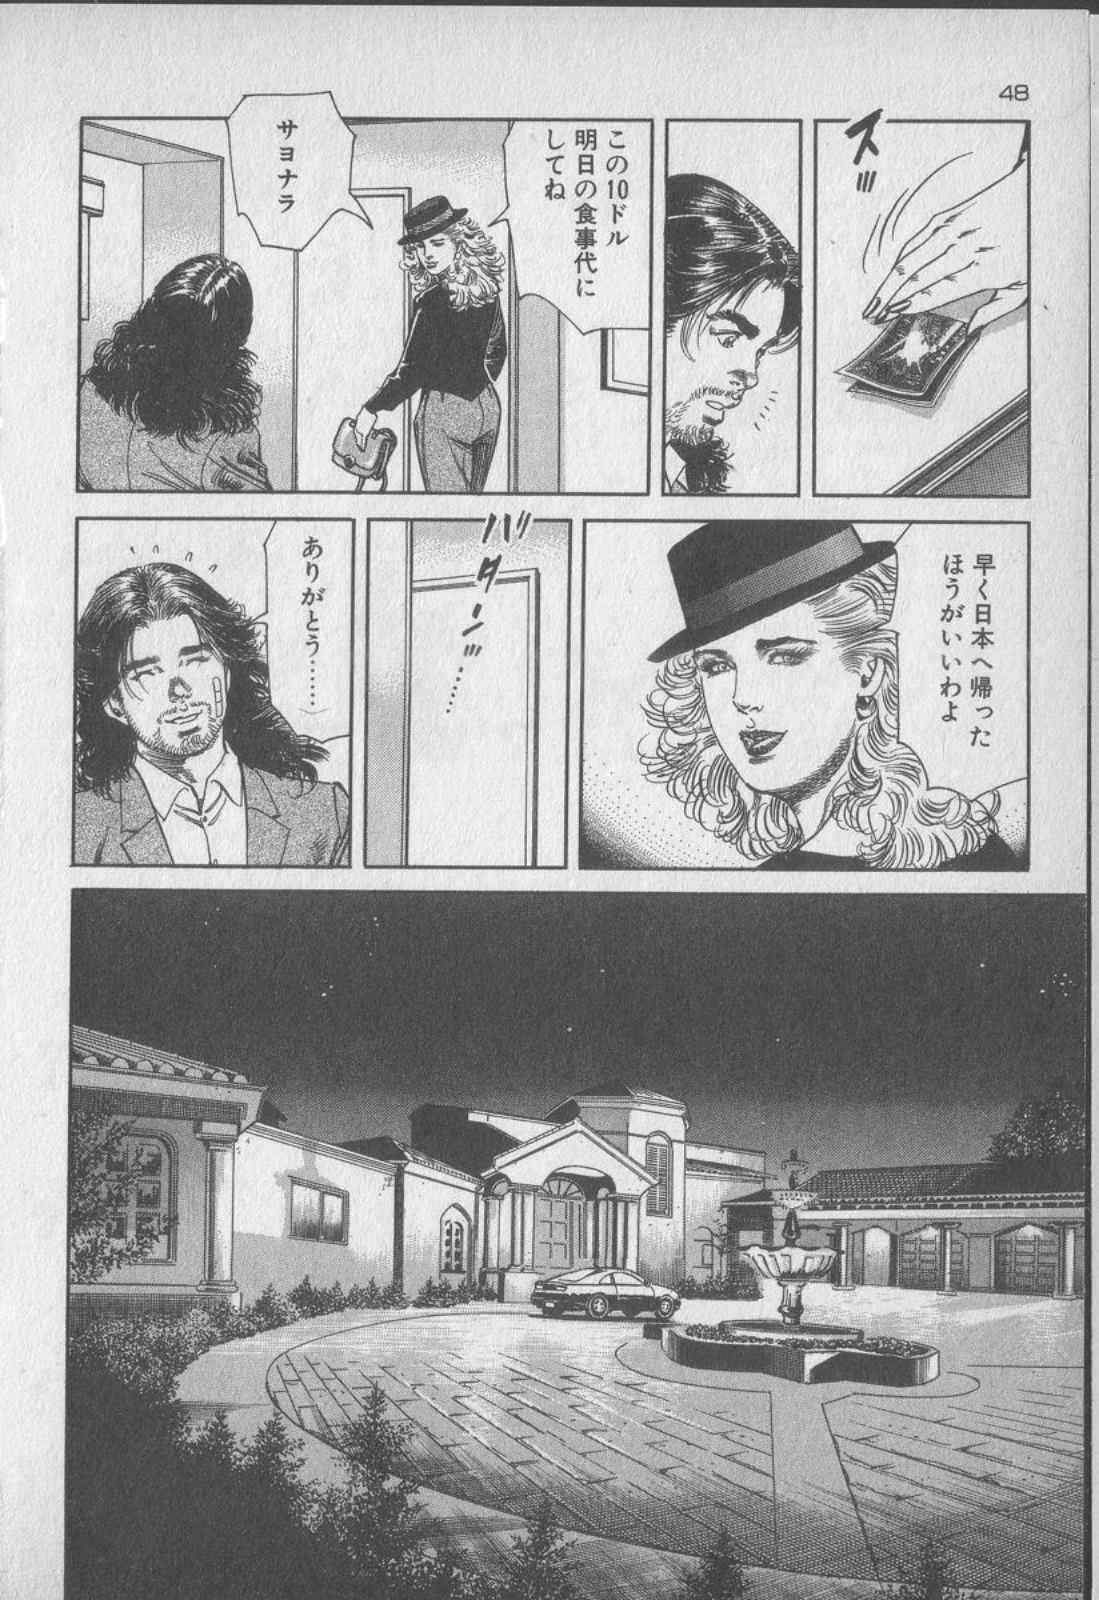 [Kano Seisaku, Koike Kazuo] Jikken Ningyou Dummy Oscar Vol.15 [叶精作, 小池一夫] 実験人形ダミー・オスカー 第15巻